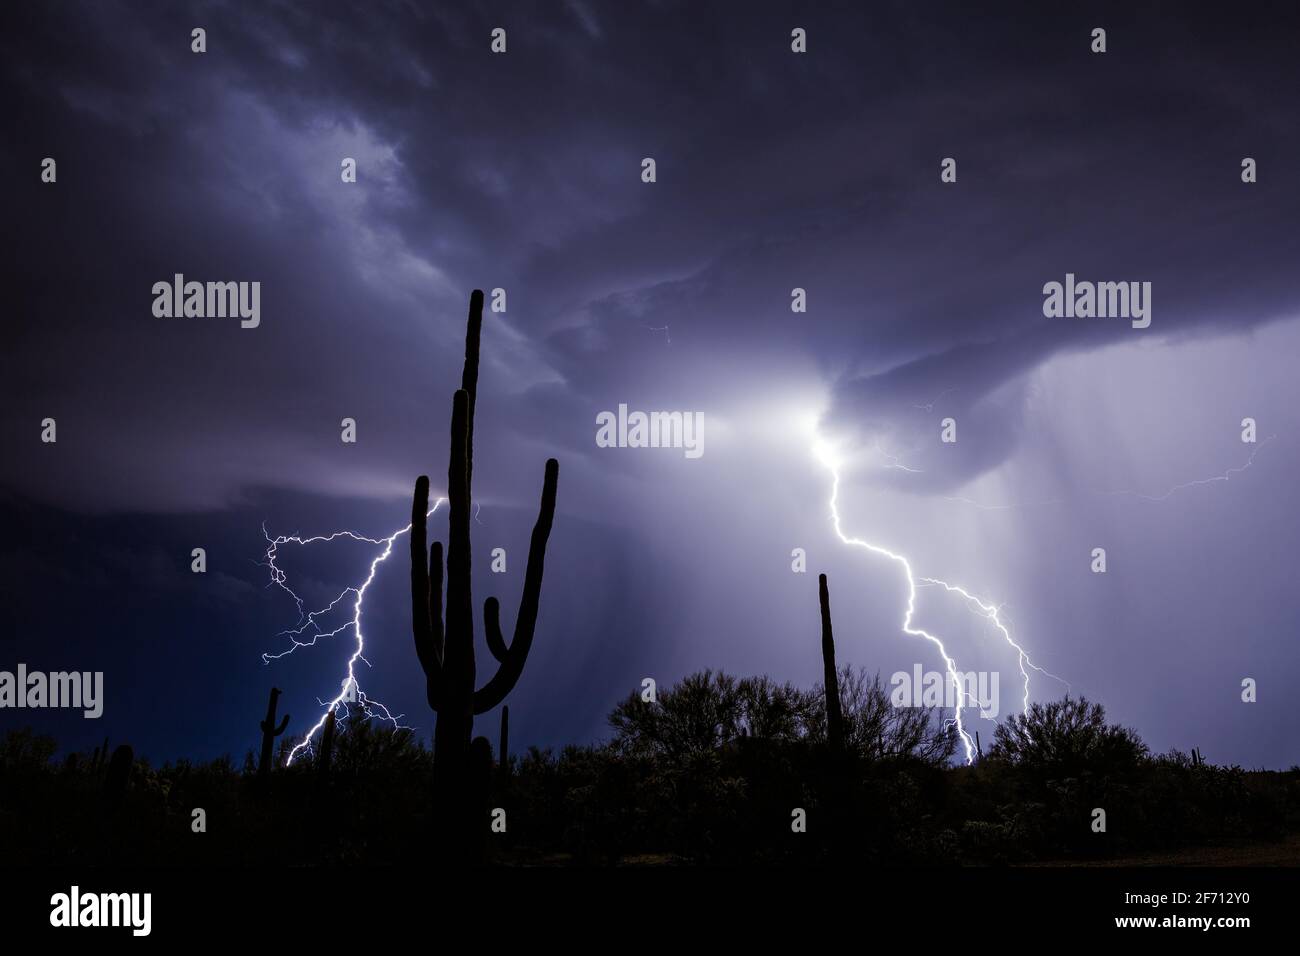 Saguaro Kaktus Silhouetten und Blitze in einem Monsun Gewitter in der Nähe von Tucson, Arizona Stockfoto